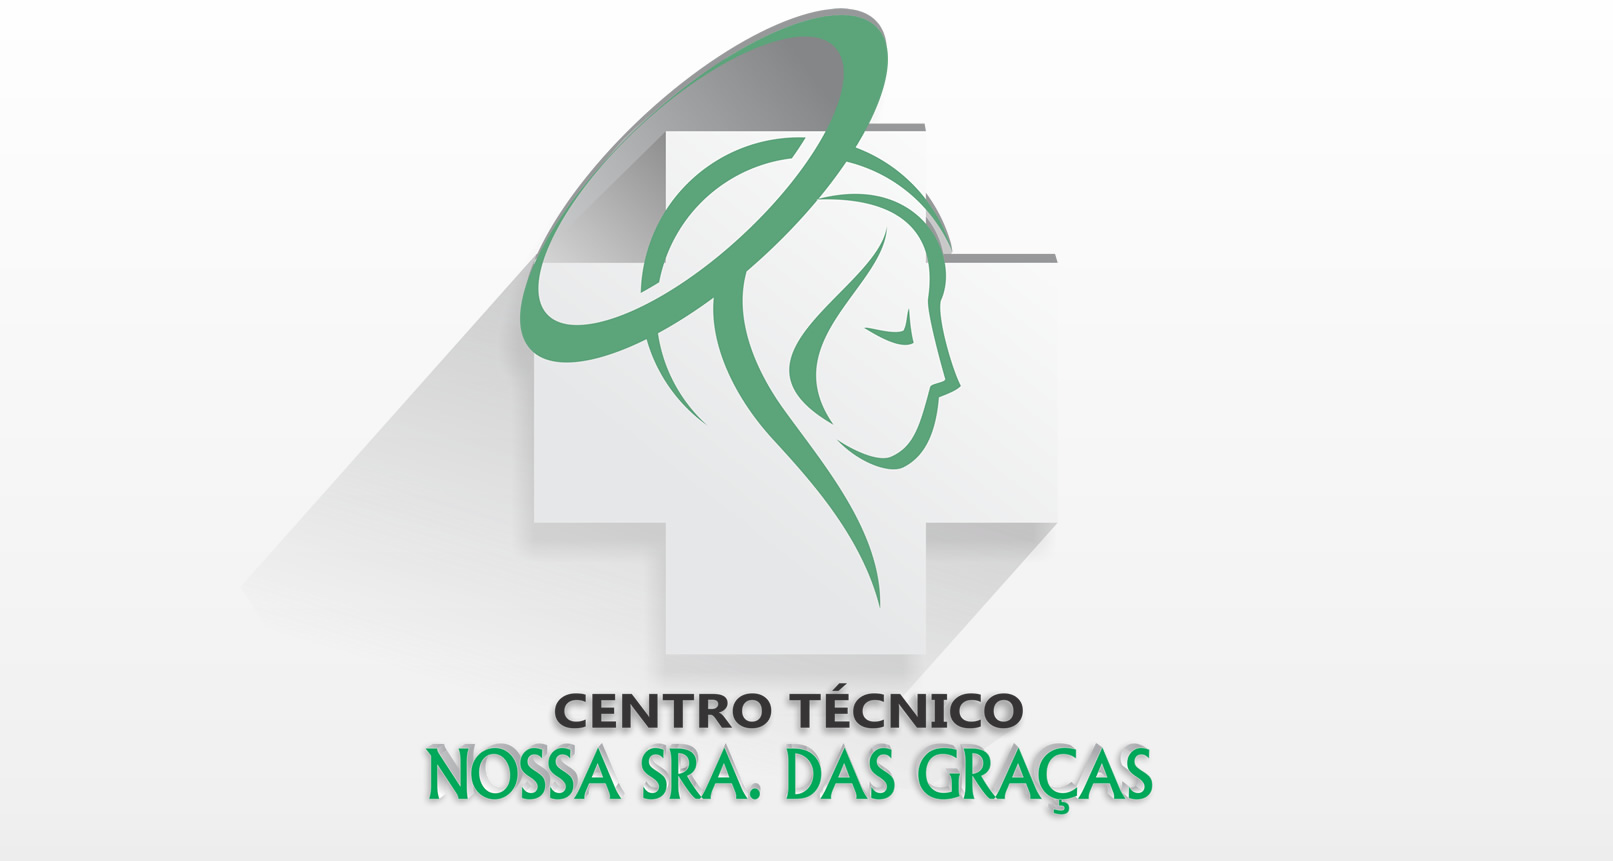 (c) Ctgracas.com.br